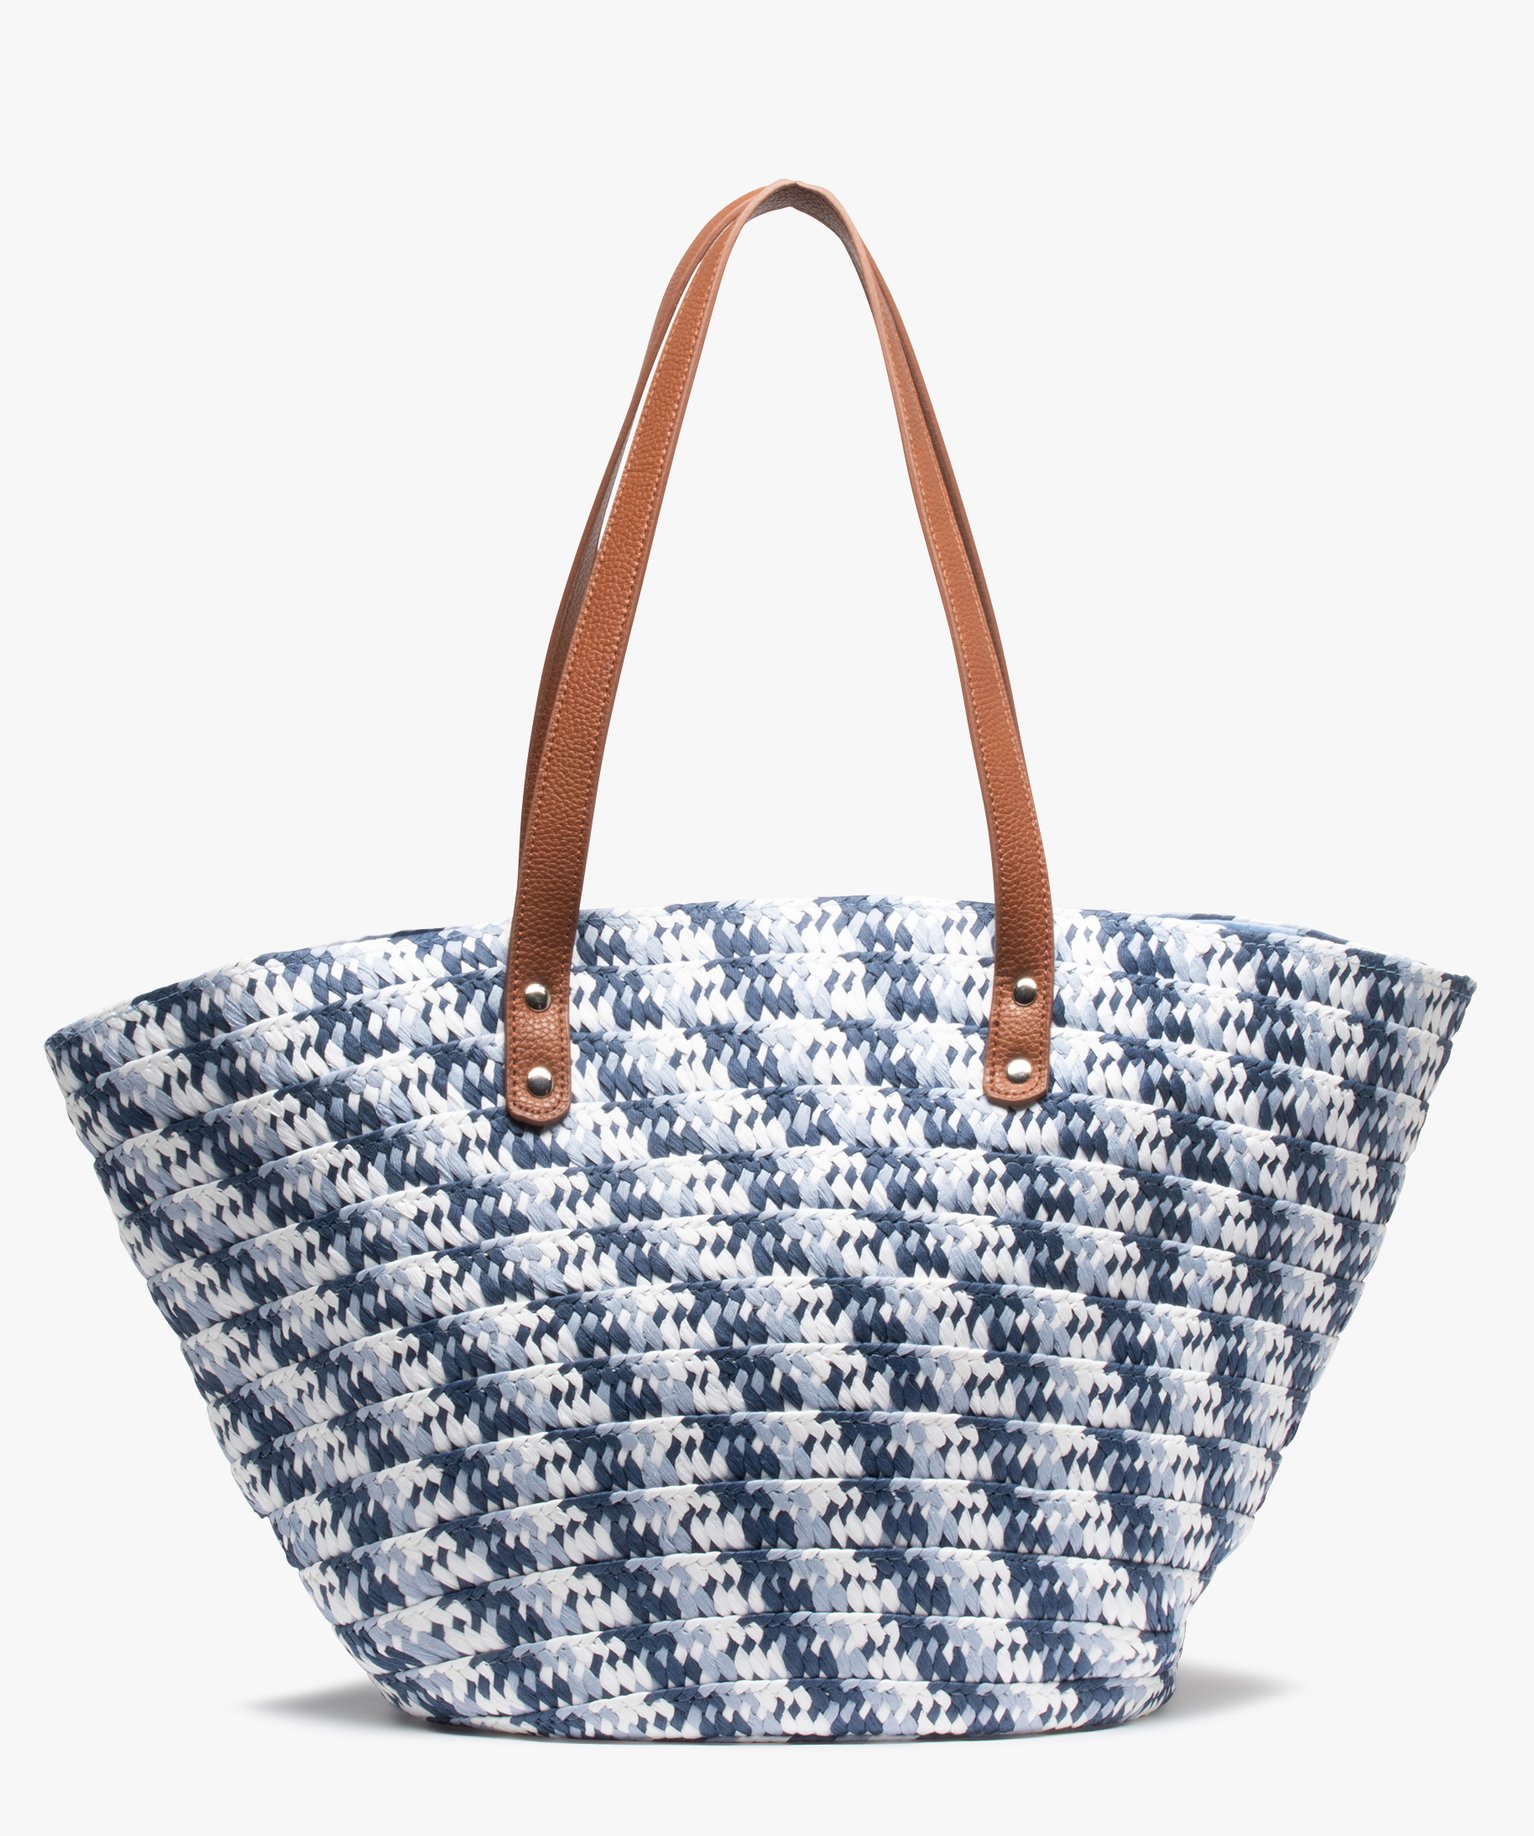 sac de plage femme en paille tressee bleu cabas - grand volume